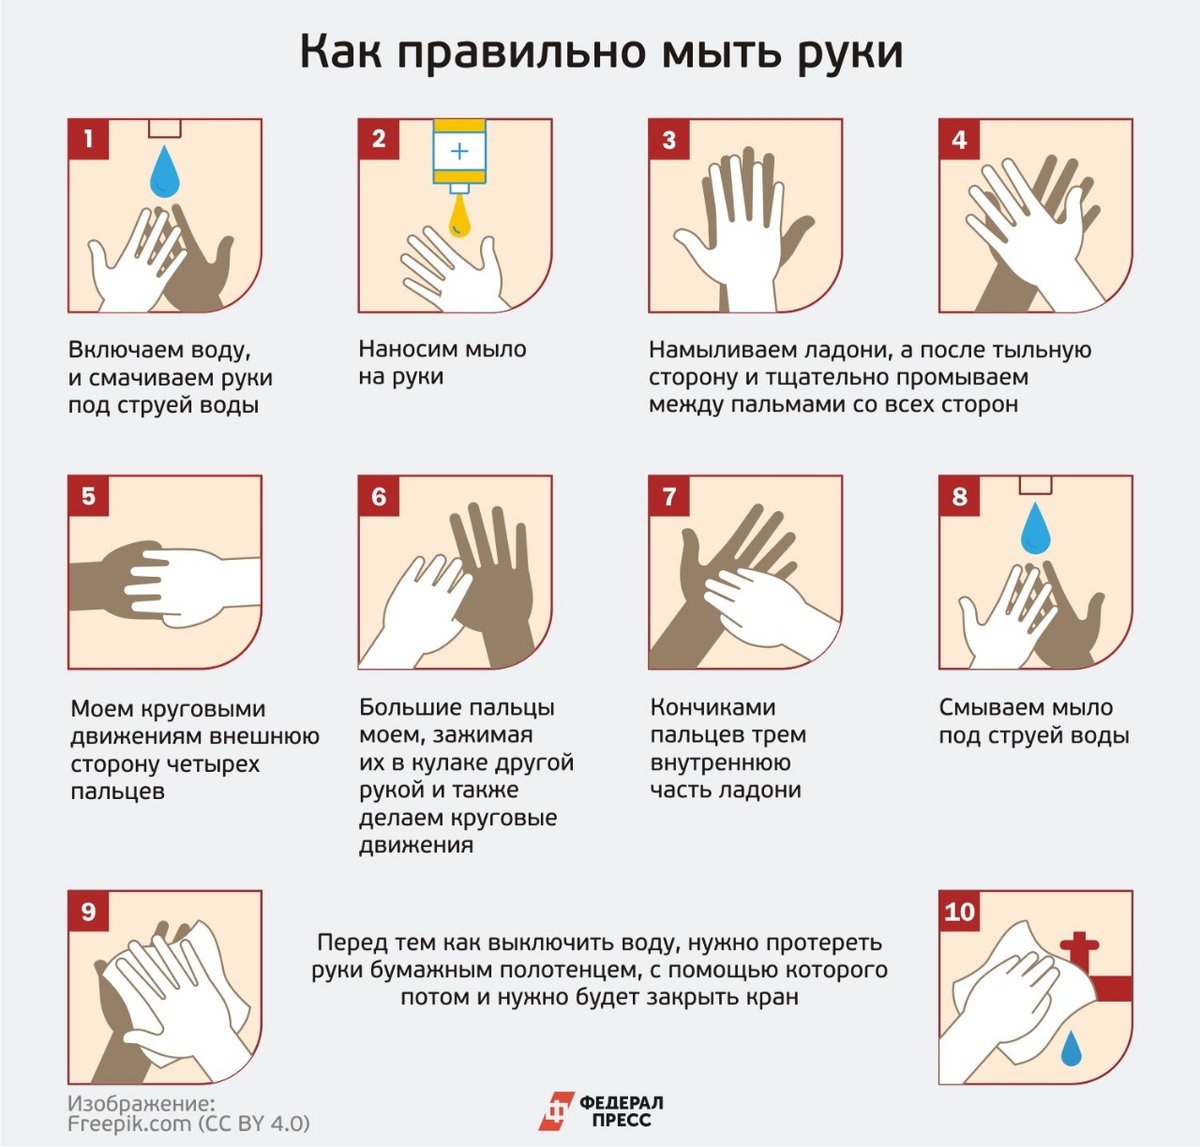 Температура воды при мытье рук. Как правильно мыть руки. КККМ правильн омыть руки. Памятка Моем руки правильно. КПК правилльнл мыть руки.